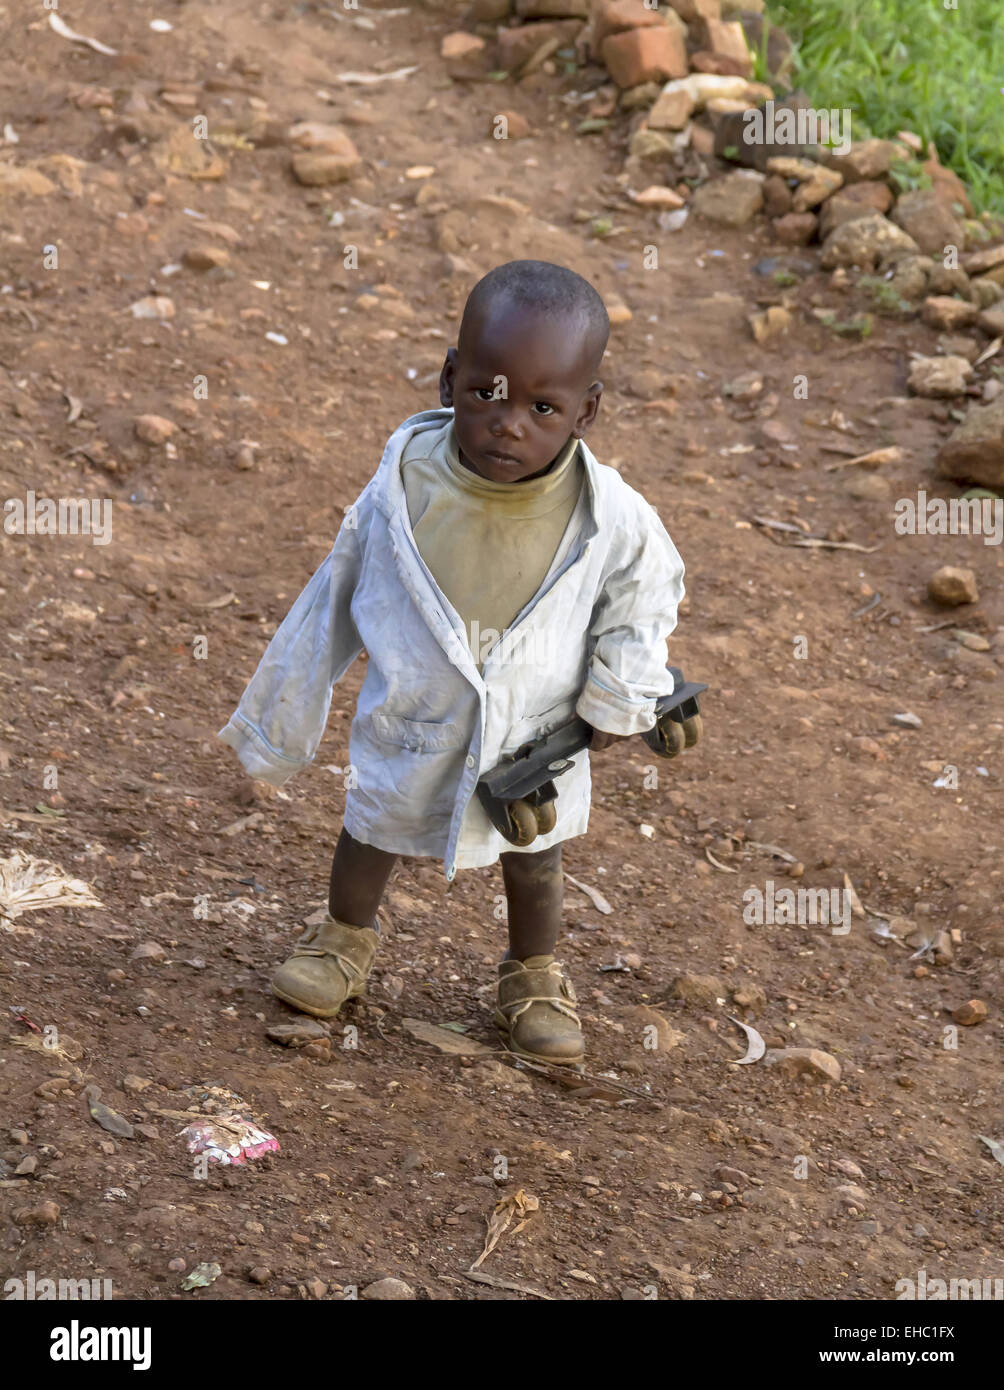 A Kigali, Ruanda - Novembre 14, 2013: bambino non identificato in una strada a Kigali il 14 novembre 2013, Kingali, Ruanda Foto Stock